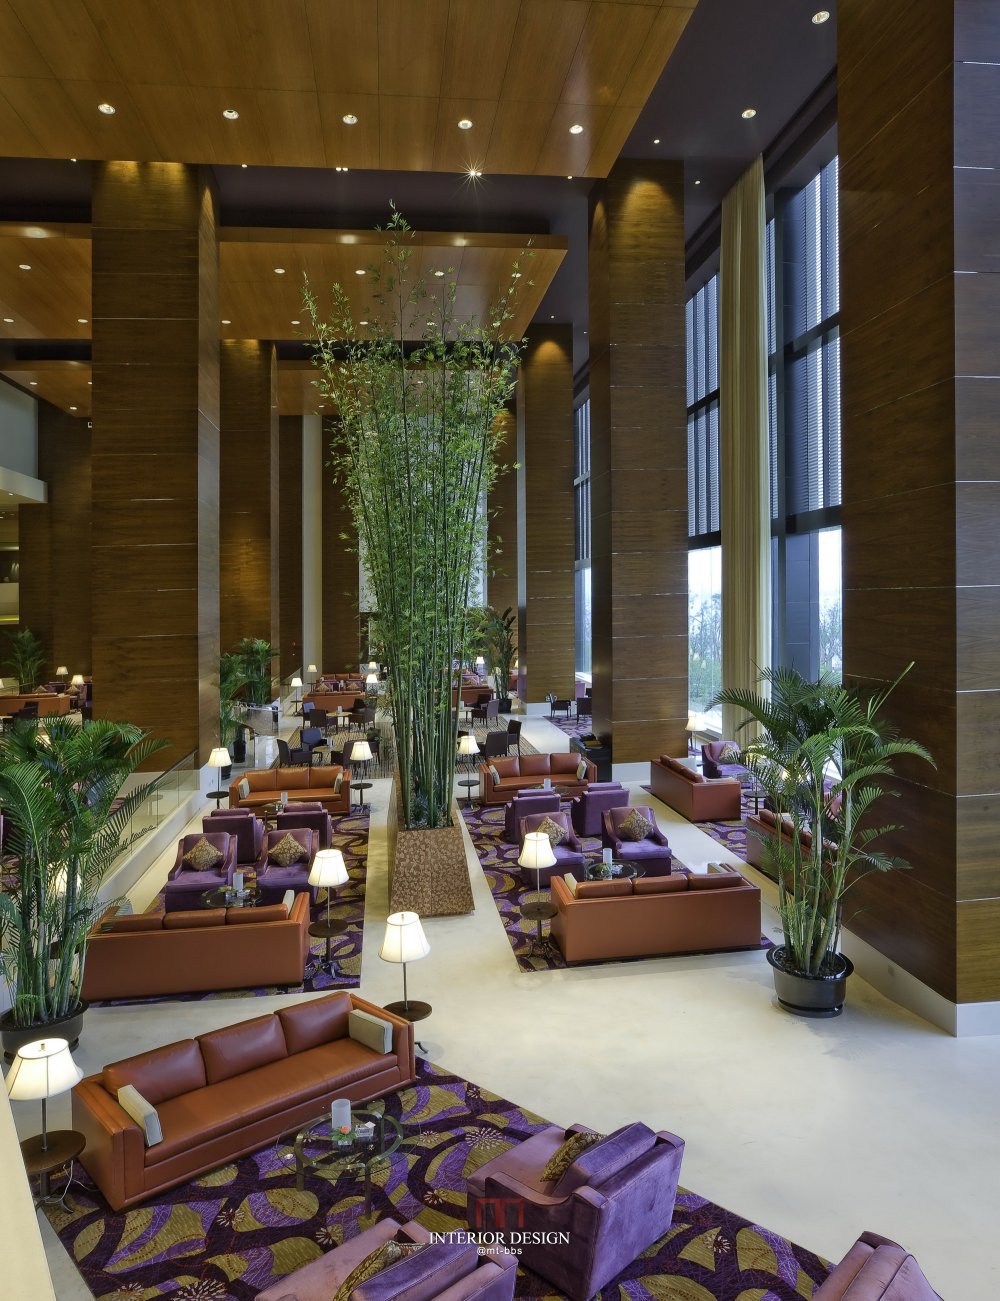 苏州金鸡湖凯宾斯基(官方摄影)(Kempinski Hotel Suzhou)(HBA)_凯宾斯基酒店-33.jpg